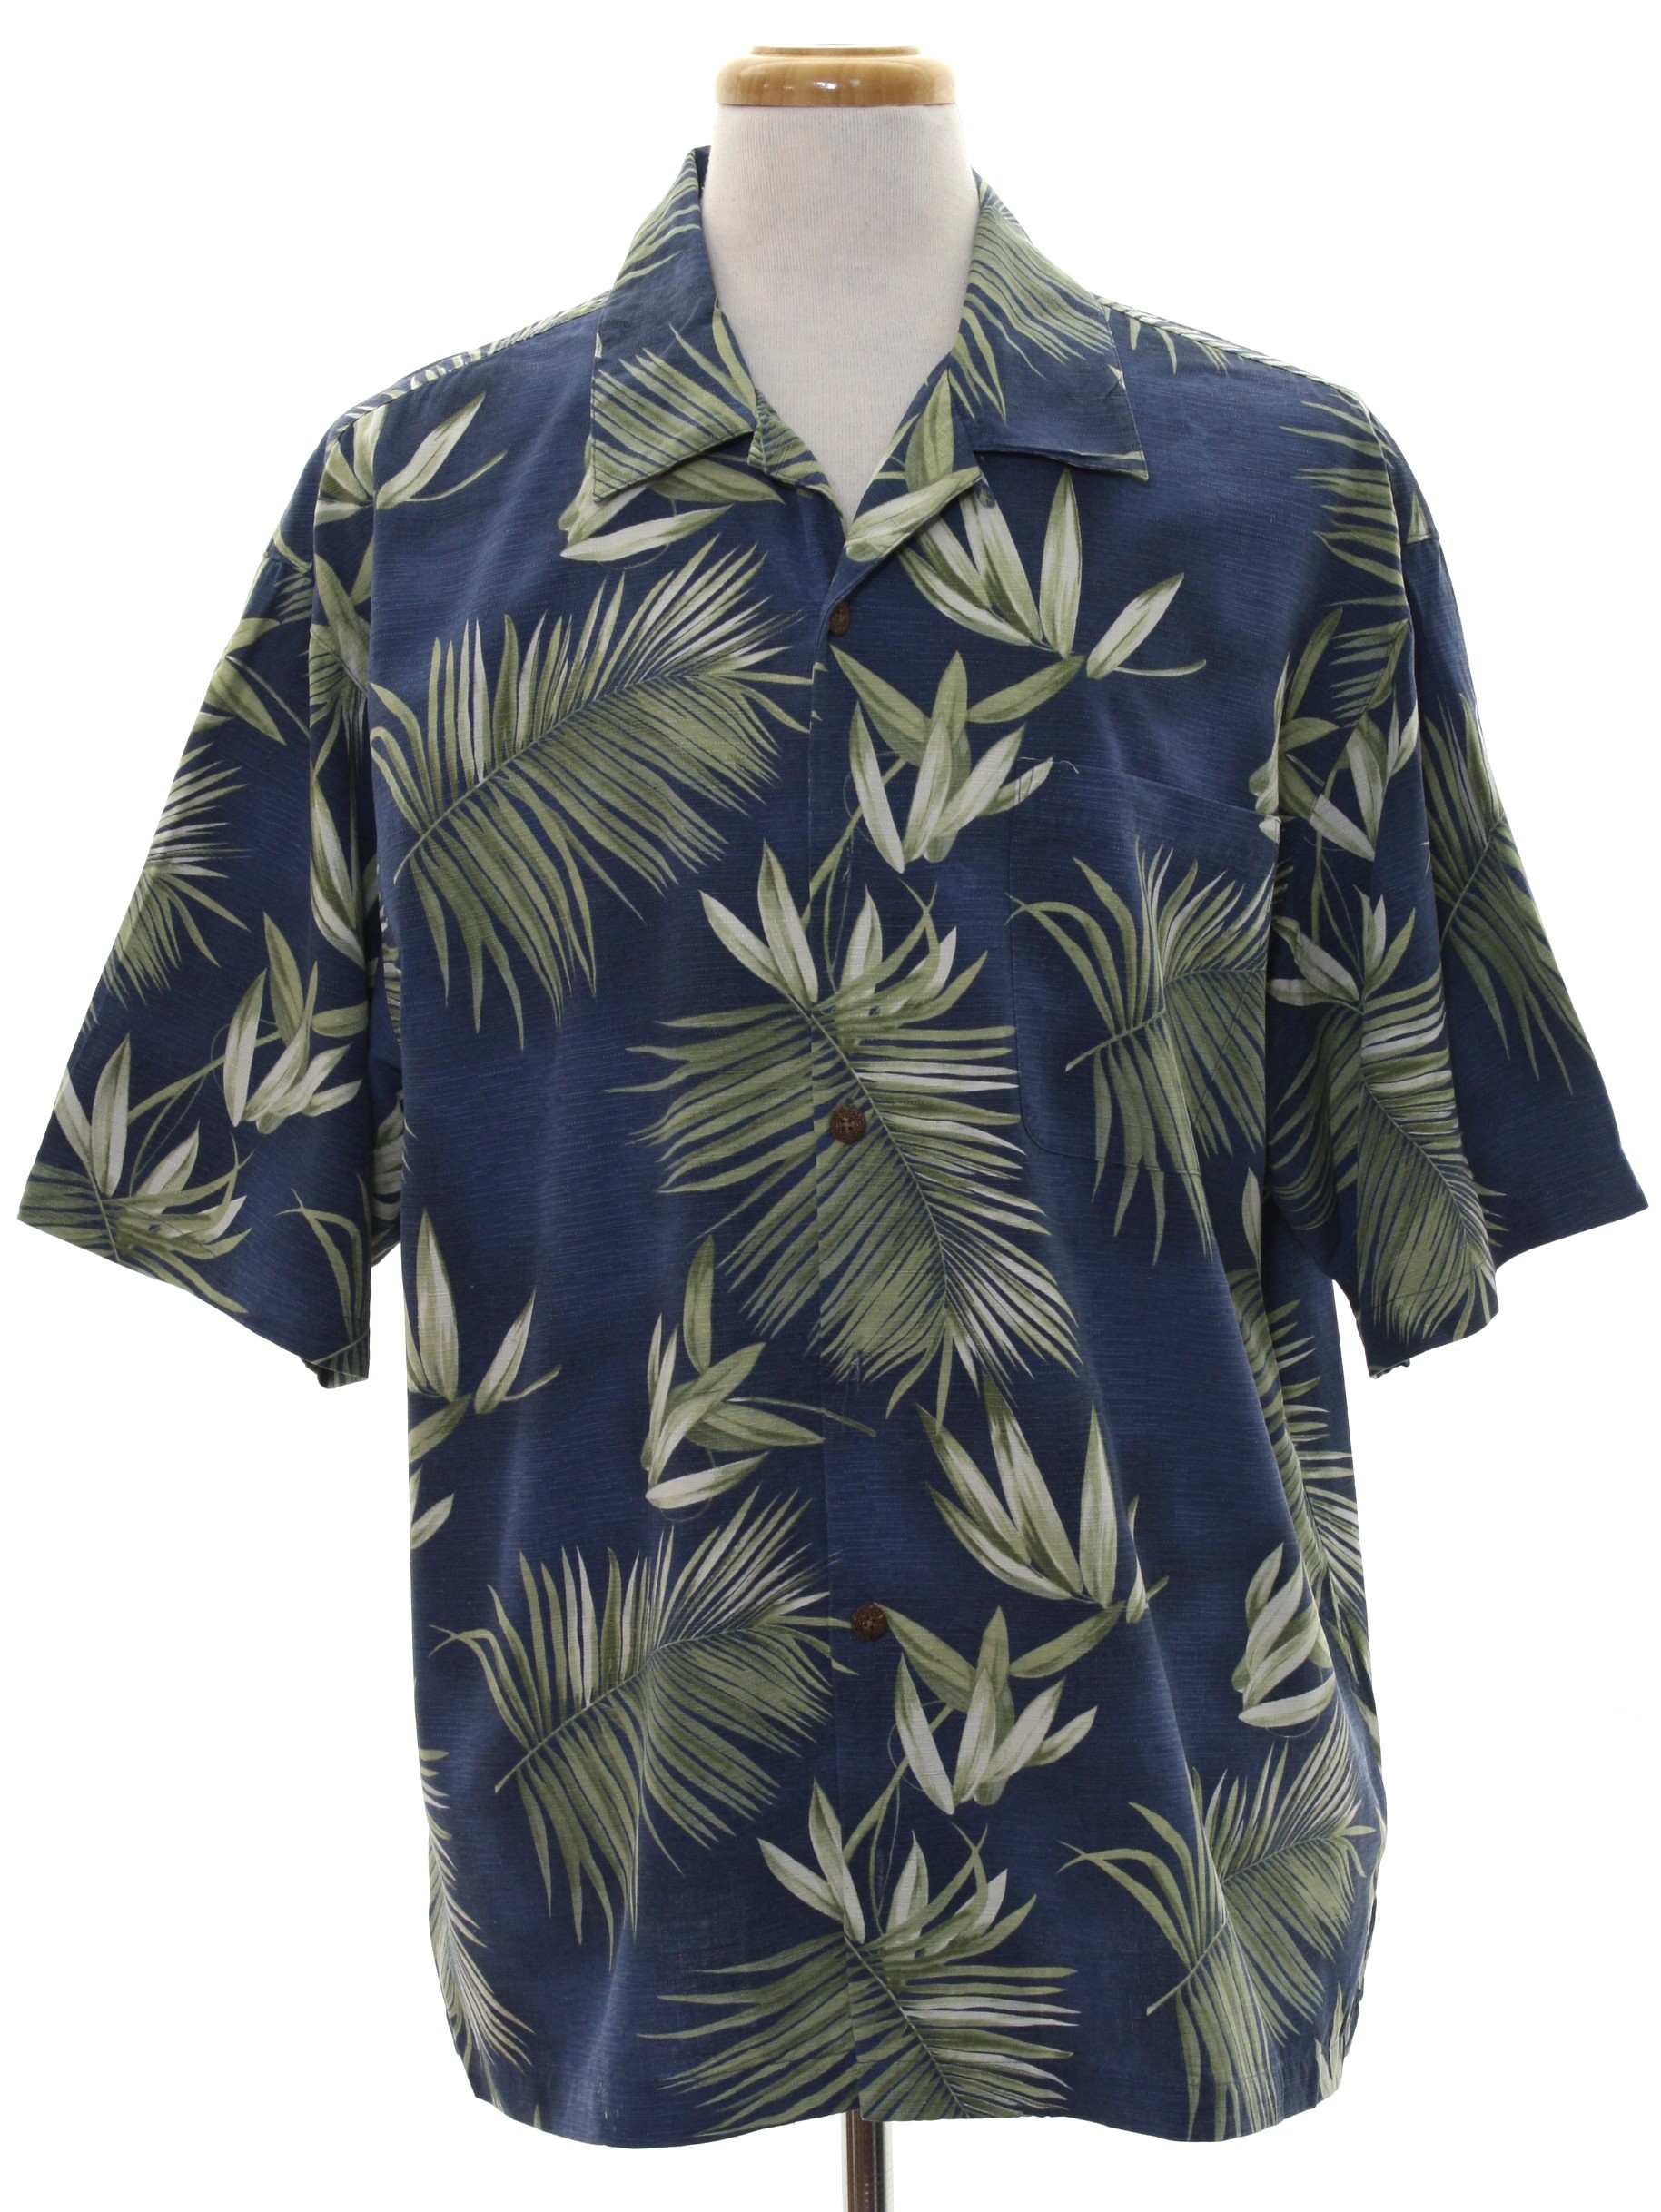 Retro 1990s Hawaiian Shirt: 90s -Joseph and Feiss- Mens dusty blue ...